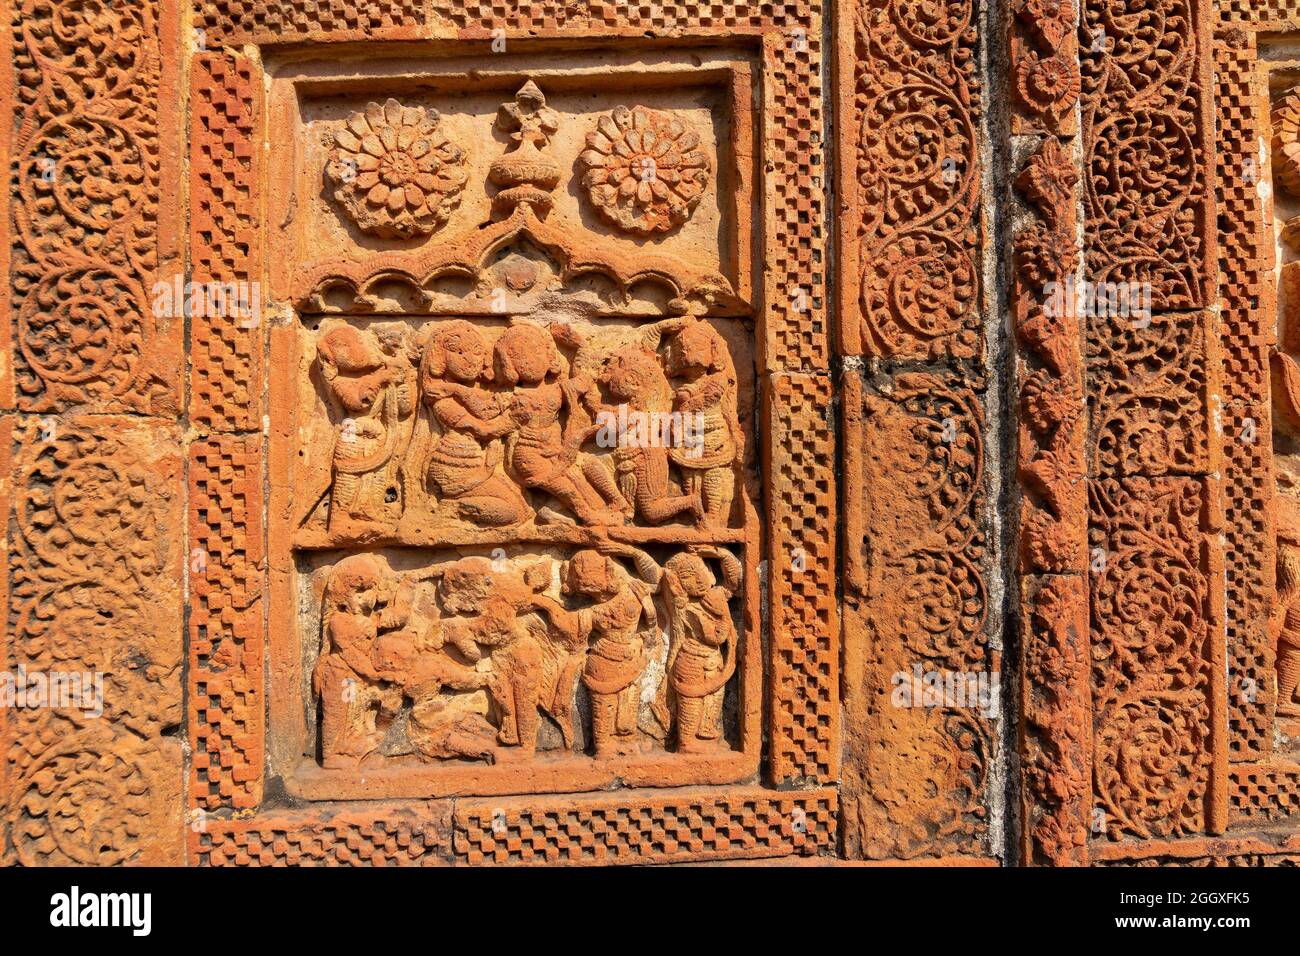 Célèbres œuvres d'art en terre cuite (argile cuite de couleur rouge brunâtre, utilisées comme matériaux de construction ornementaux) au temple de Madanmohan, à Bishnupur, W. B. India. Banque D'Images